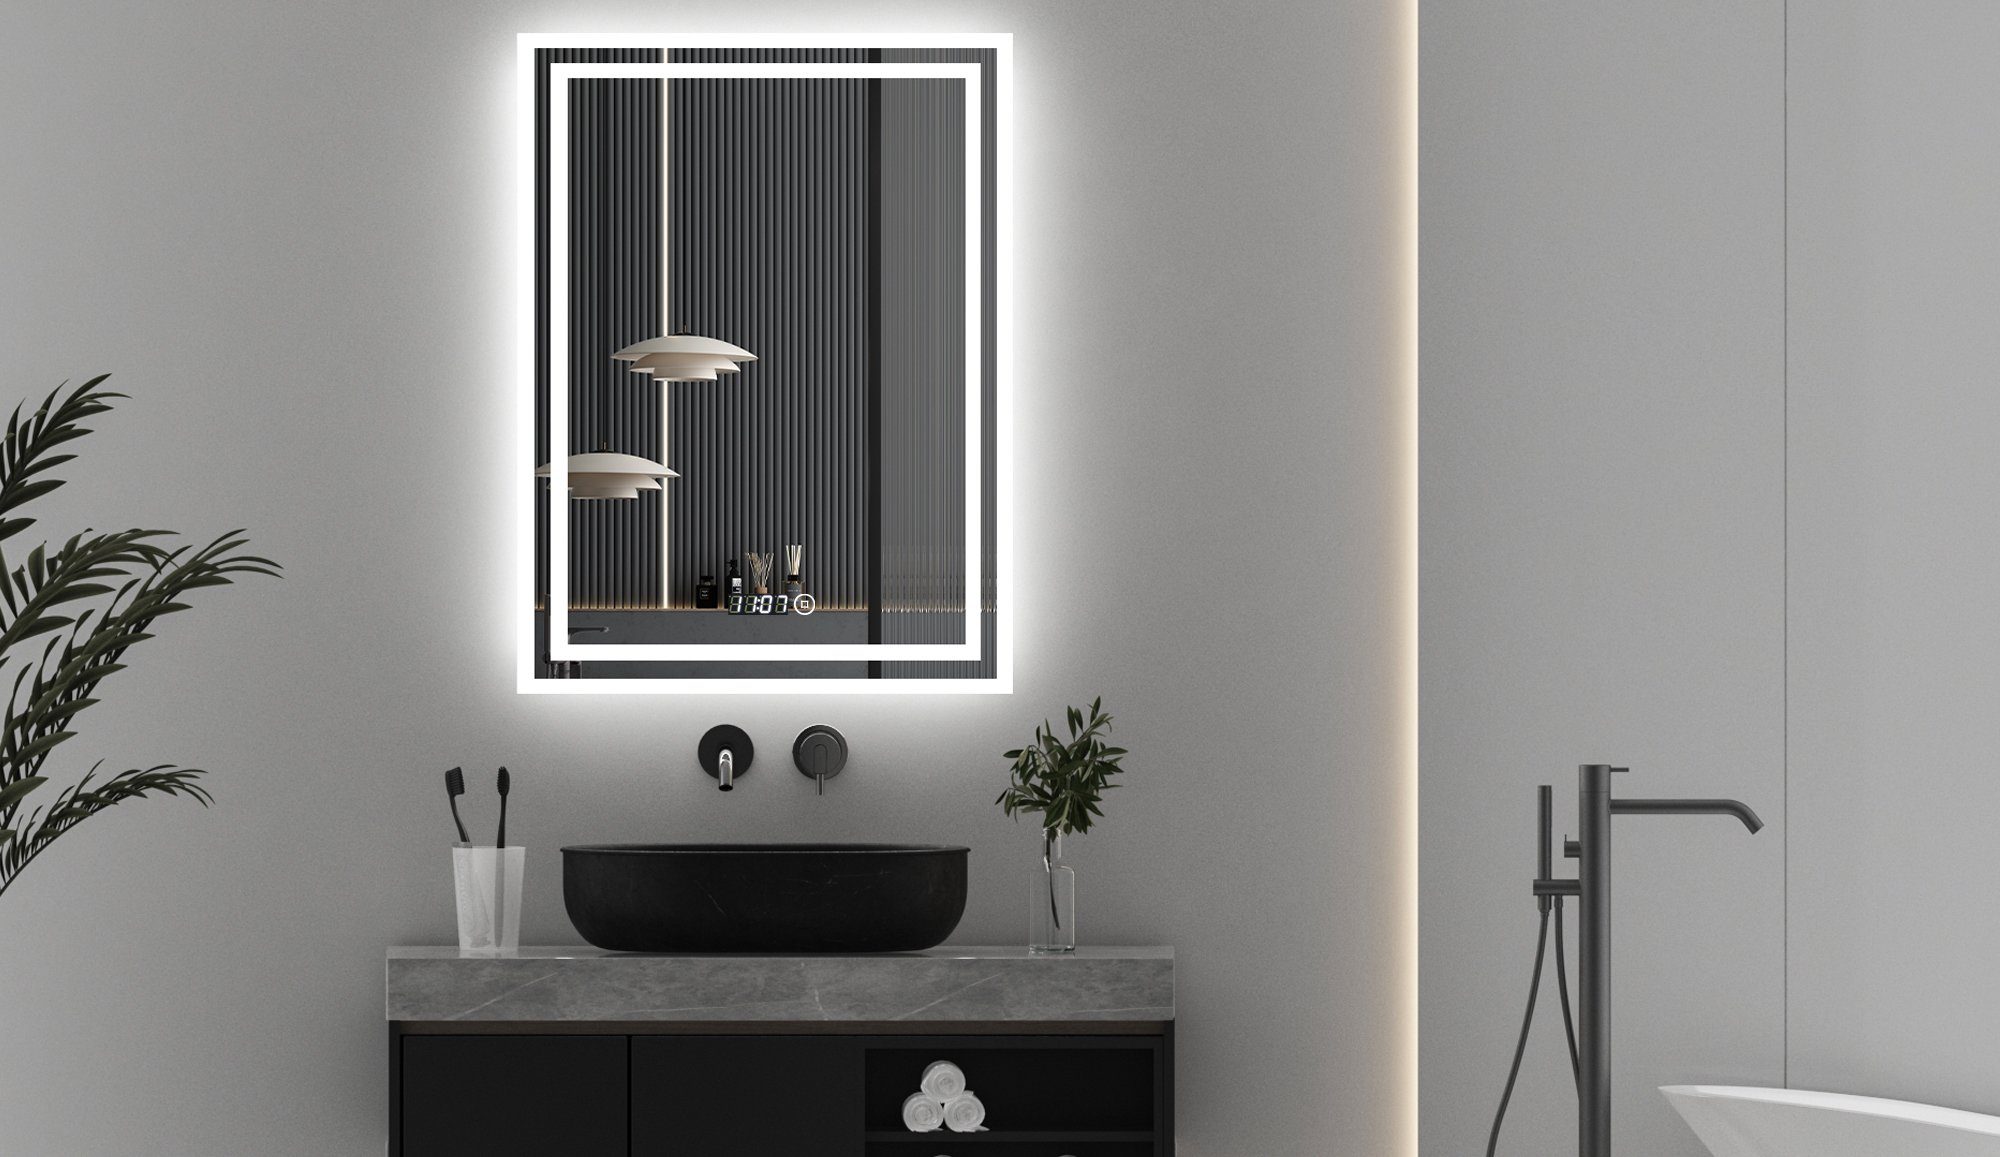 WDWRITTI Spiegel Badspiegel Led 50x70 mit Uhr Wandspiegel mit beleuchtung 3Lichtfarben (LED Spiegel Lichtspiegel, mit Touch, Wandschalter, Dimmbar, Speicherfunktion), Energiesparend, IP44